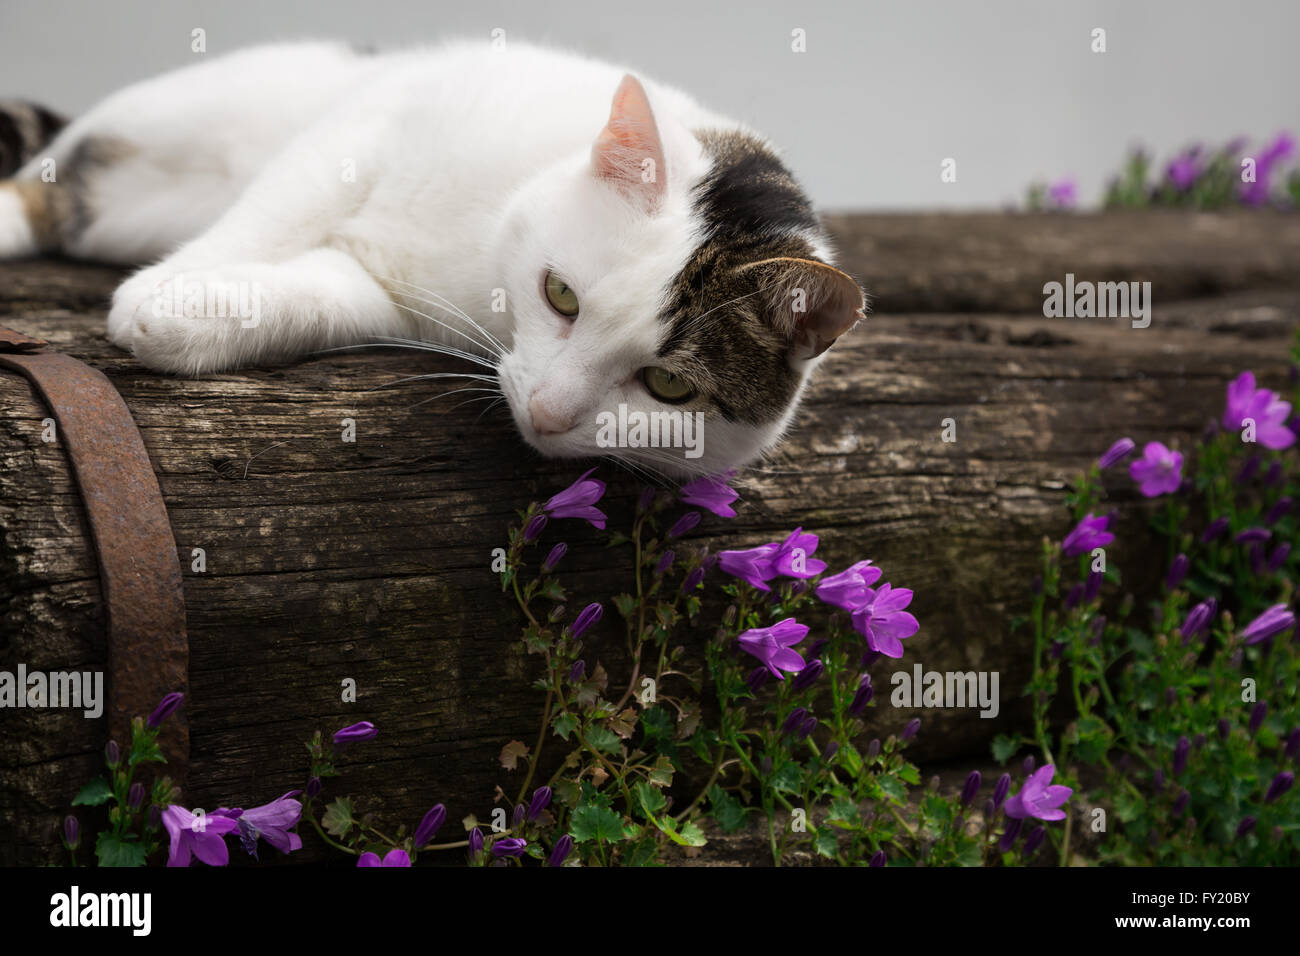 Bild eines weißen Farbe und grau Tabby Katze liegend auf einer Holzbank in einem Garten in der Nähe von einigen kleinen lila / rosa Blüten. Stockfoto